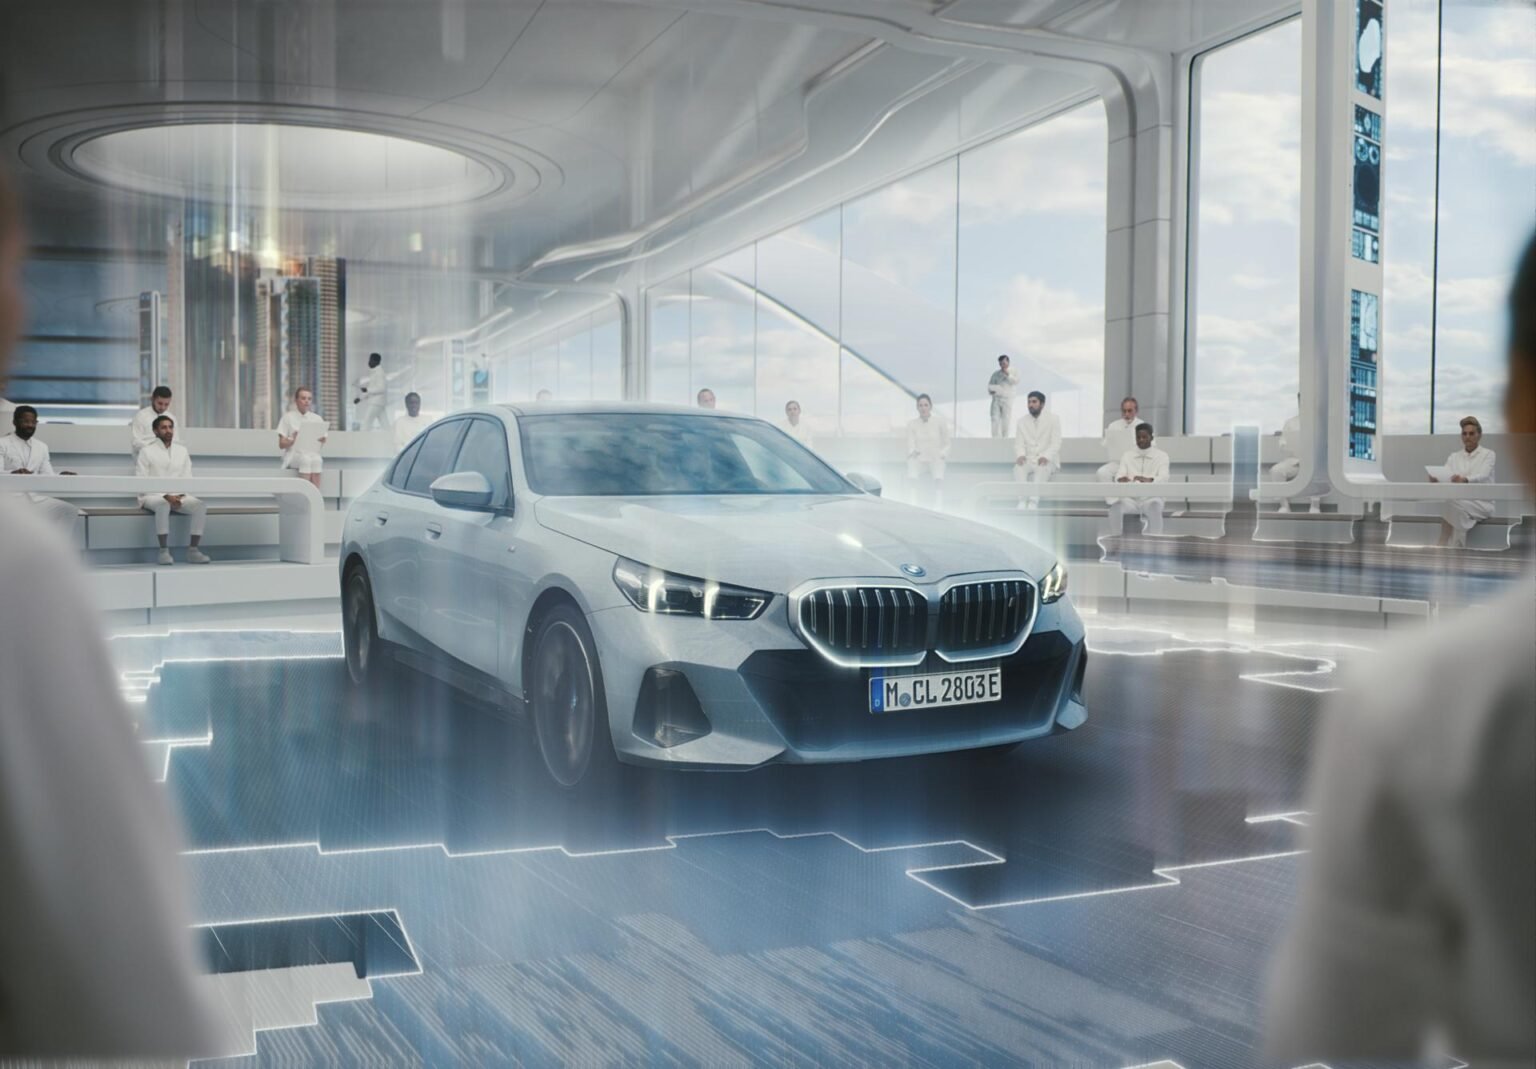 BMW: 2025 jedes vierte Auto elektrisch